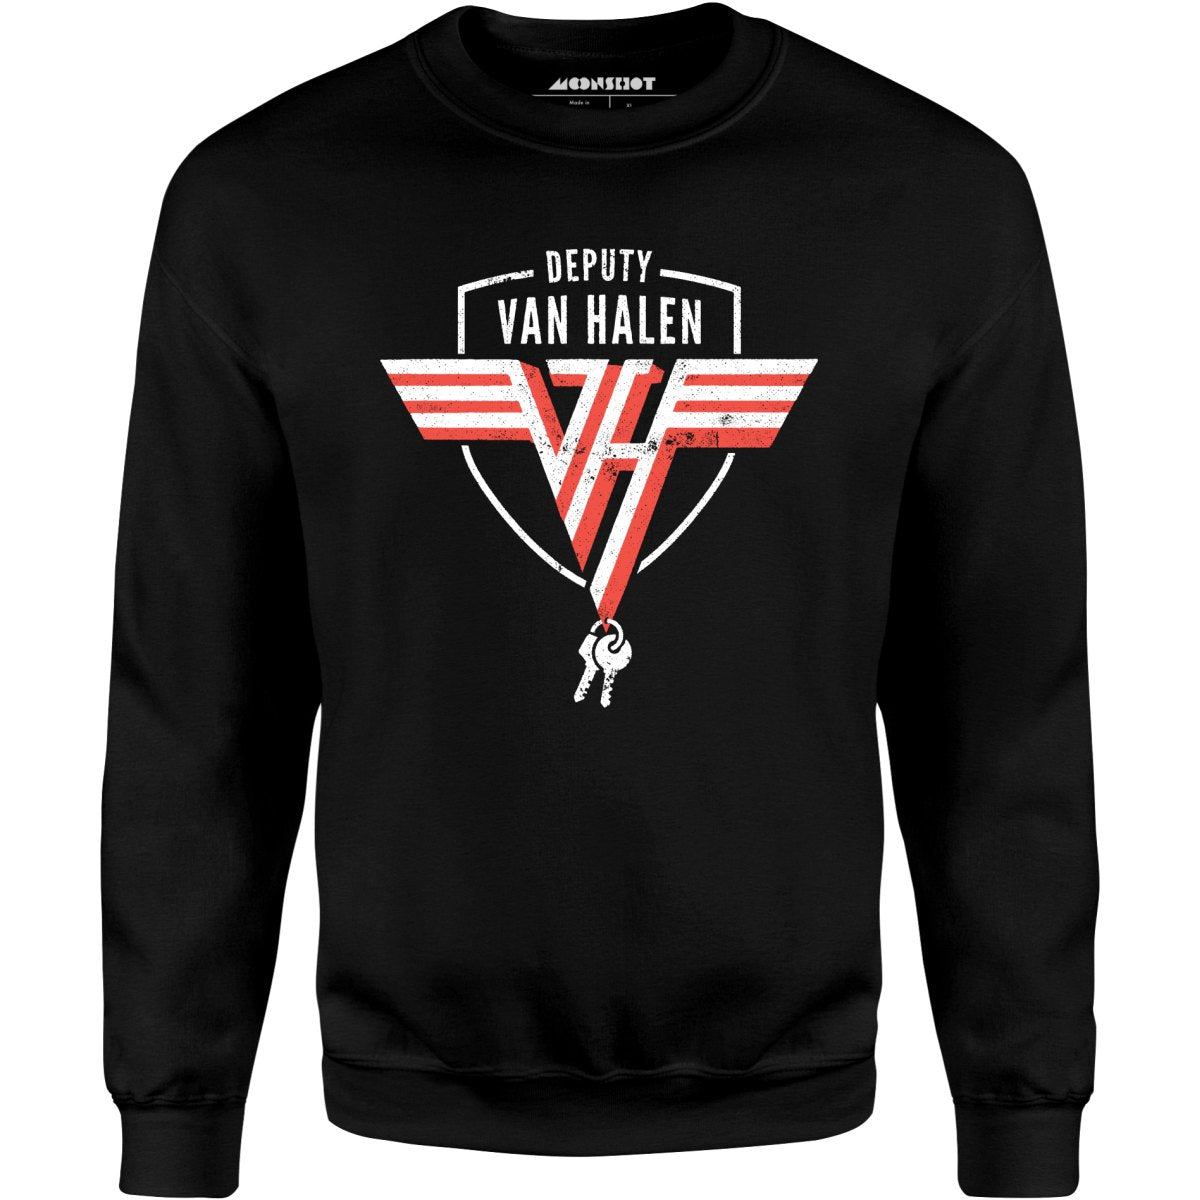 Deputy Van Halen - Unisex Sweatshirt